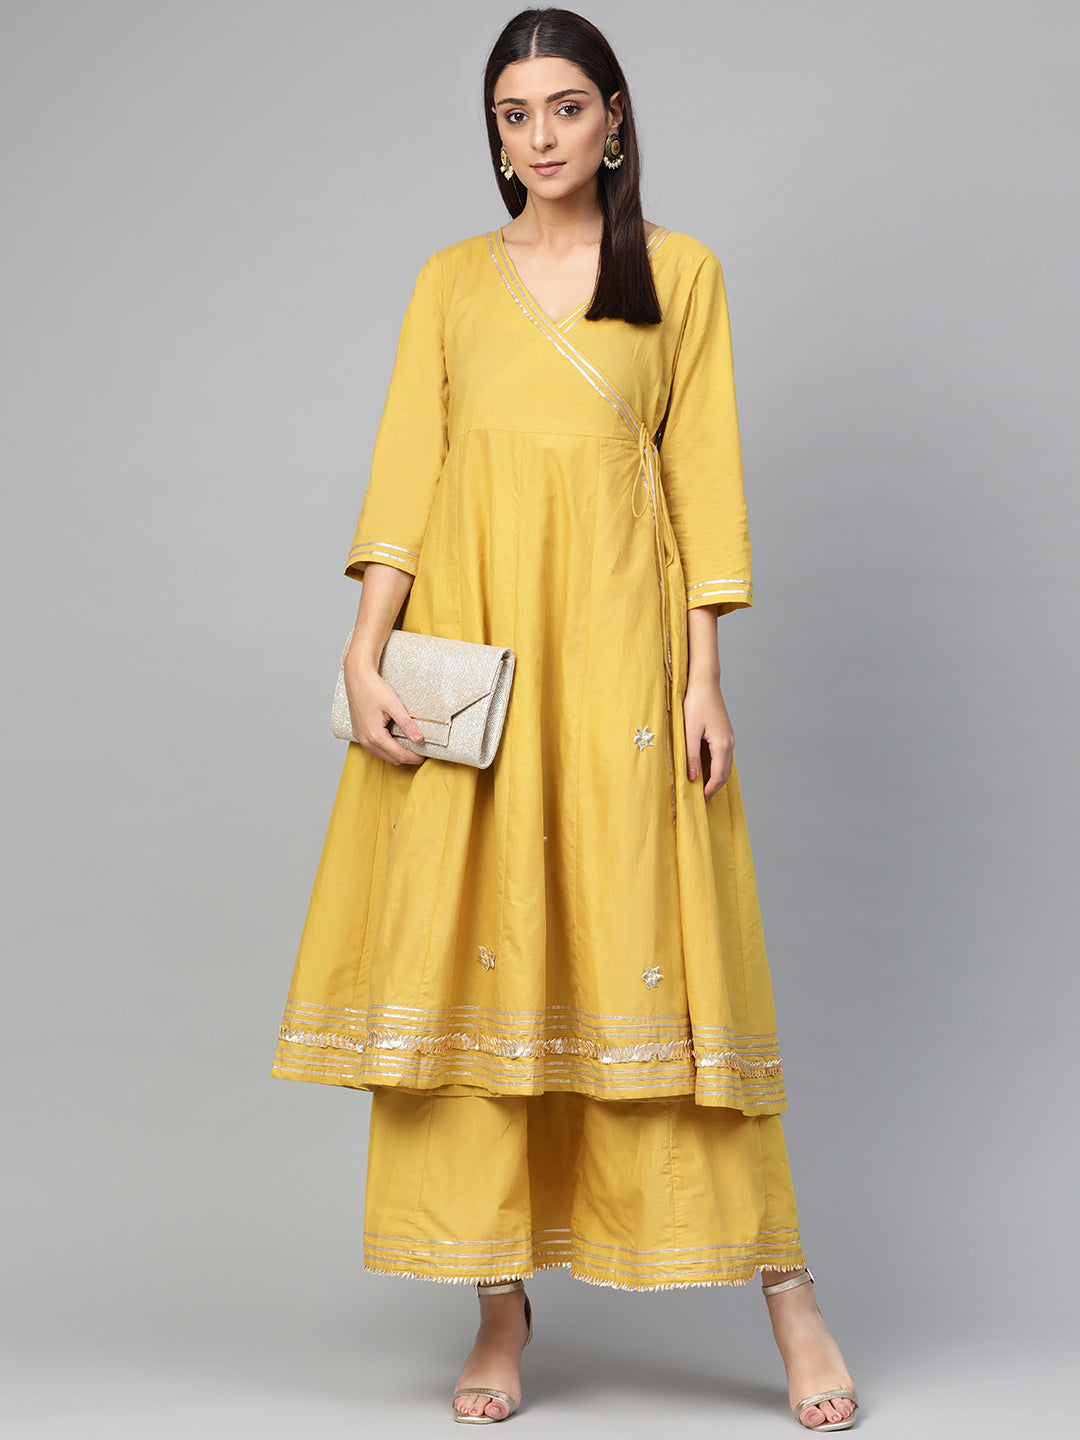 Women's Mustard Yellow Solid Gotta Detailing Kurta & Mustard Gotta Lace Skirt - Bhama Couture